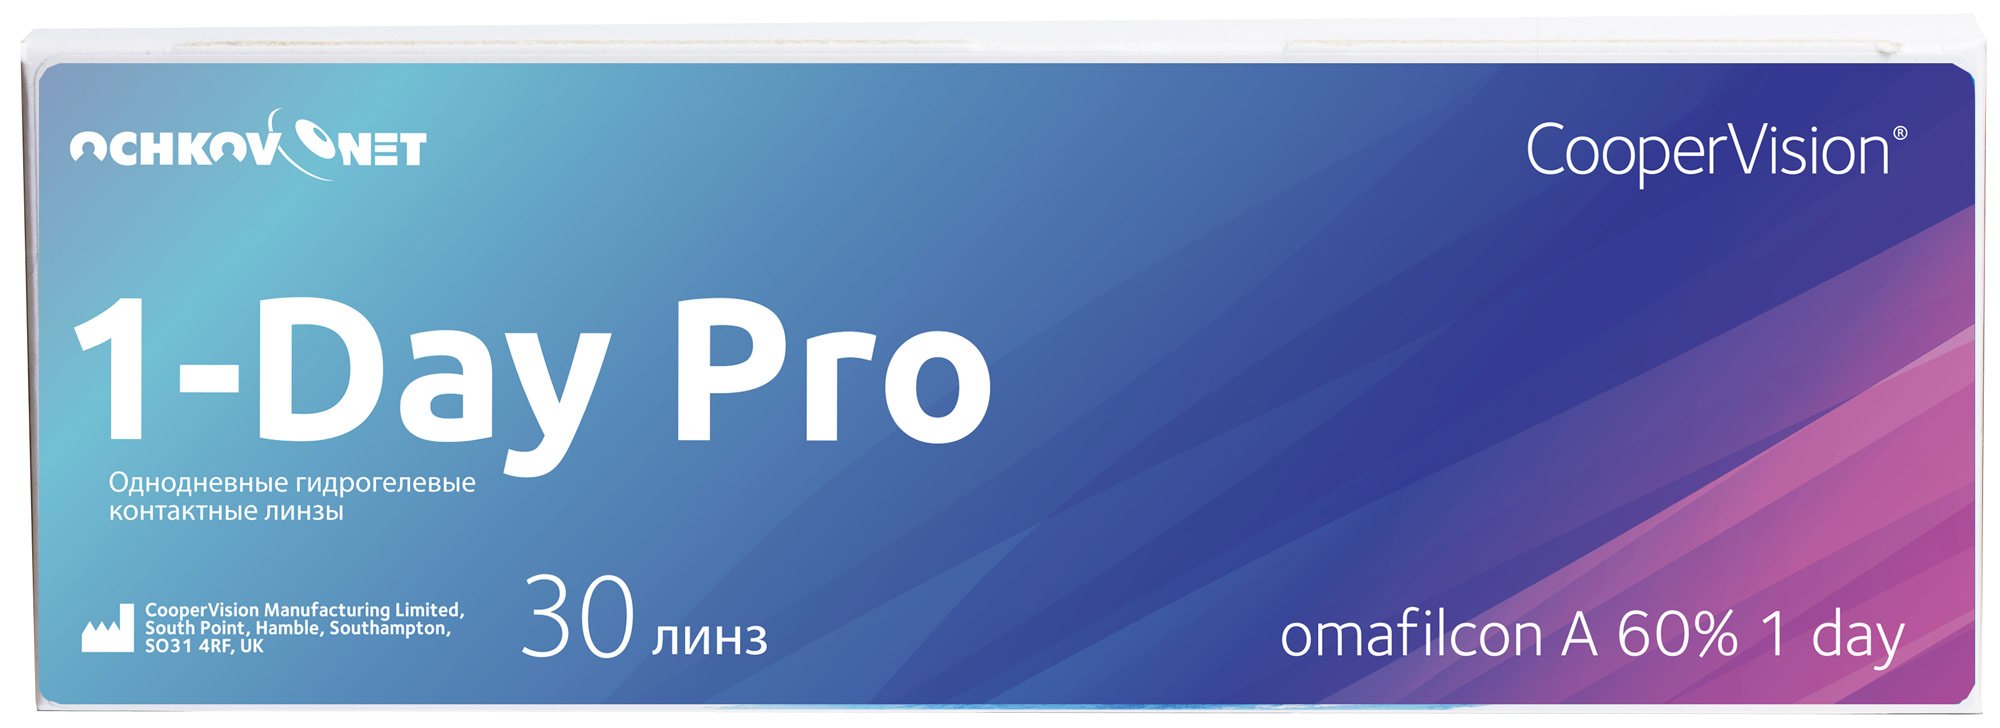 Купить Контактные линзы Ochkov.Net 1-Day Pro 30 линз 8.7, -1.5